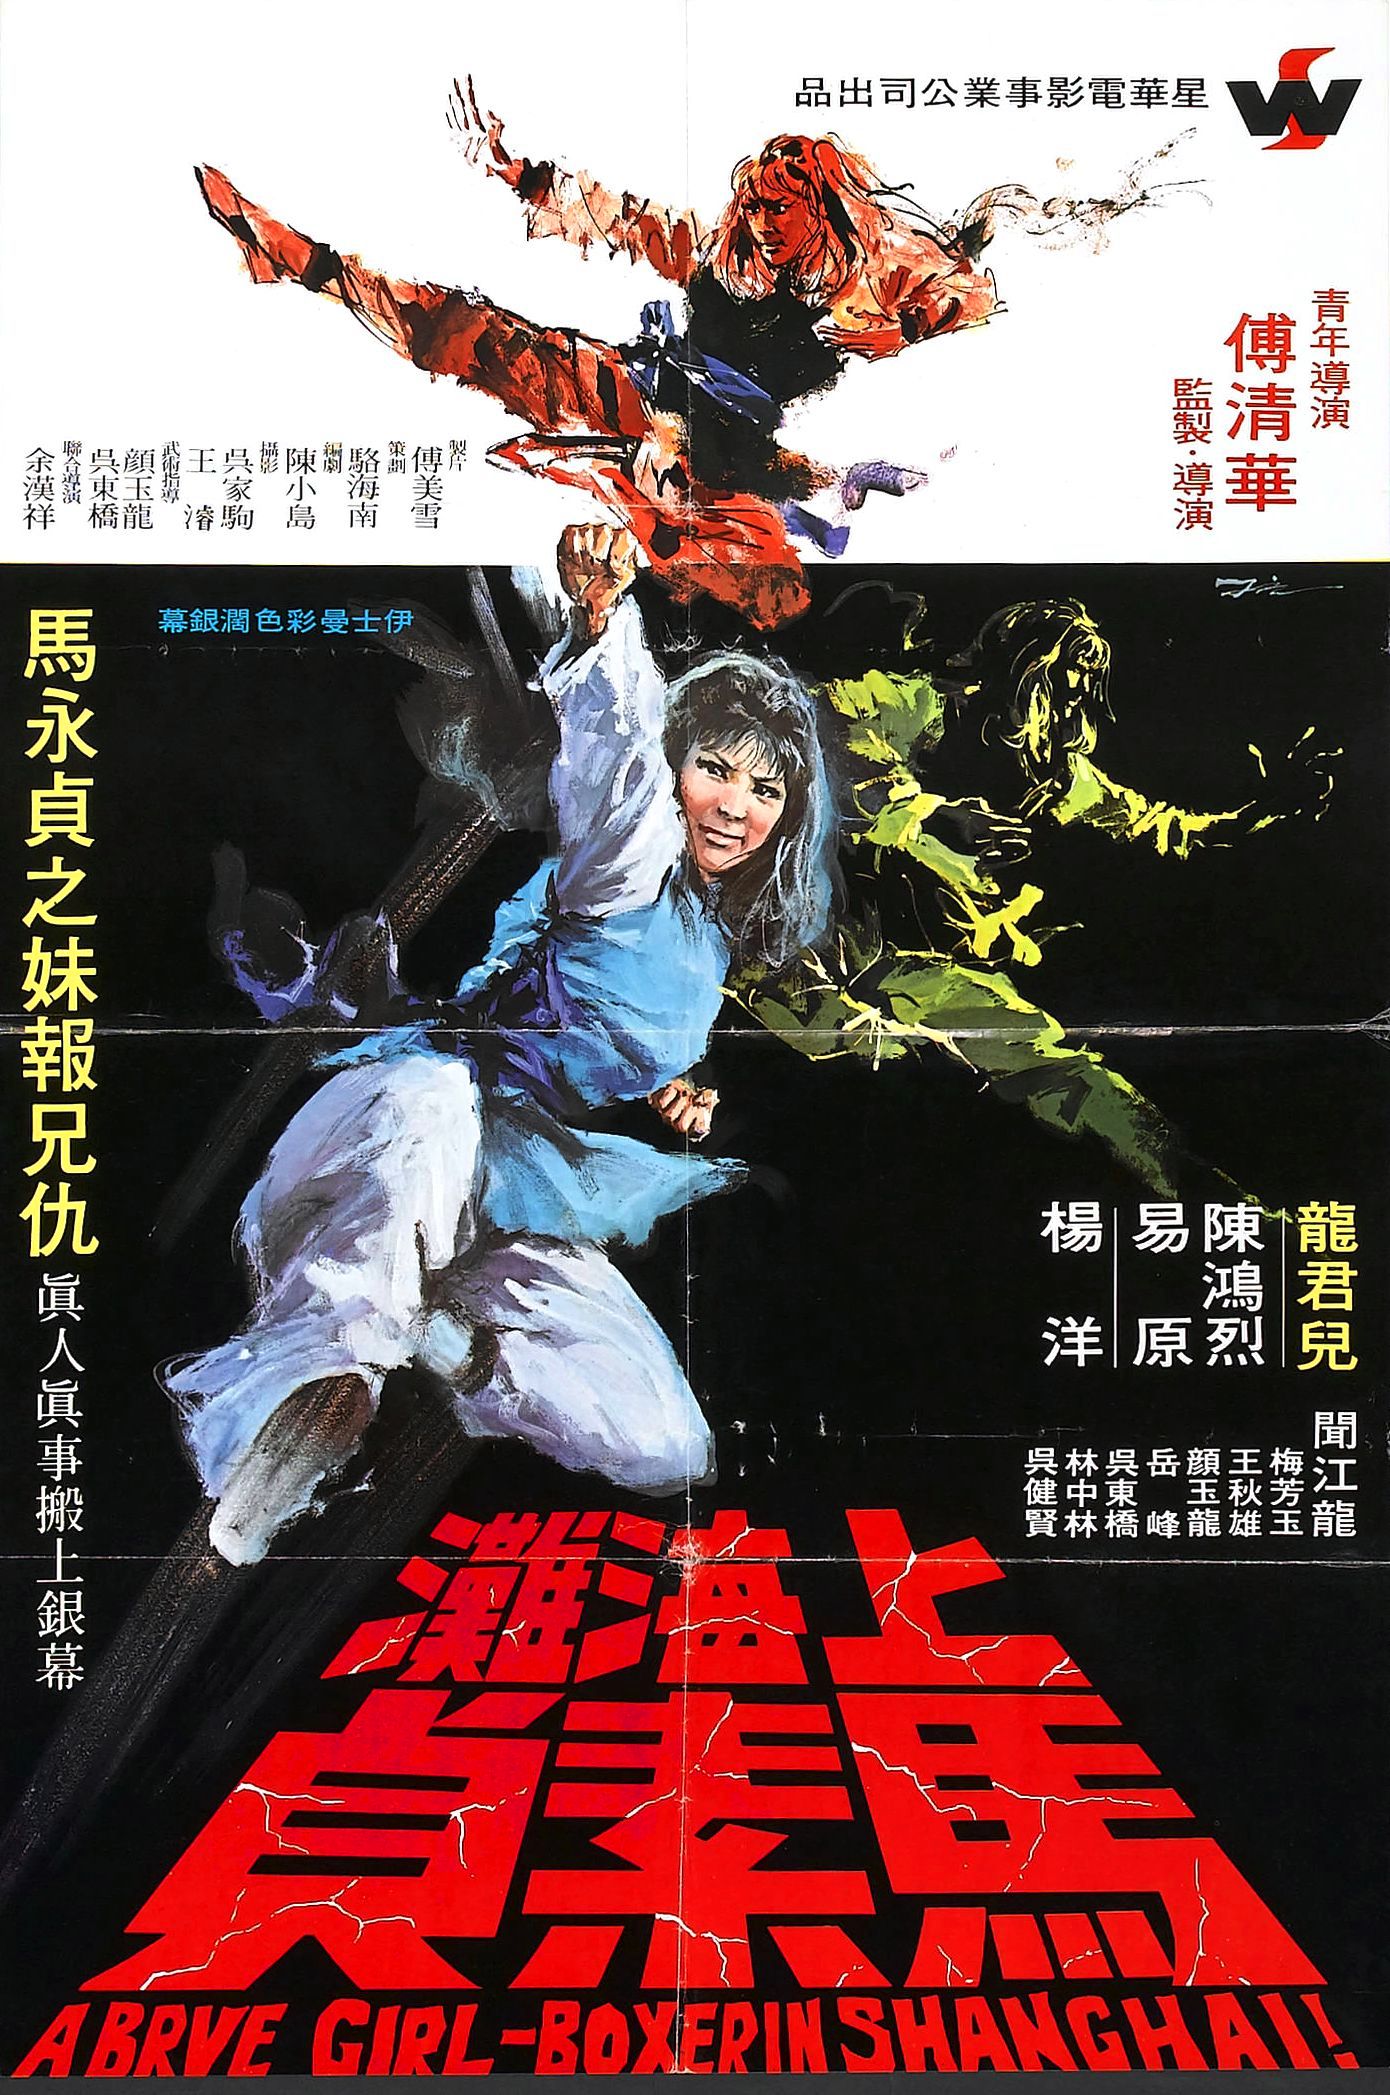 Shi men wei feng (1972) Screenshot 2 